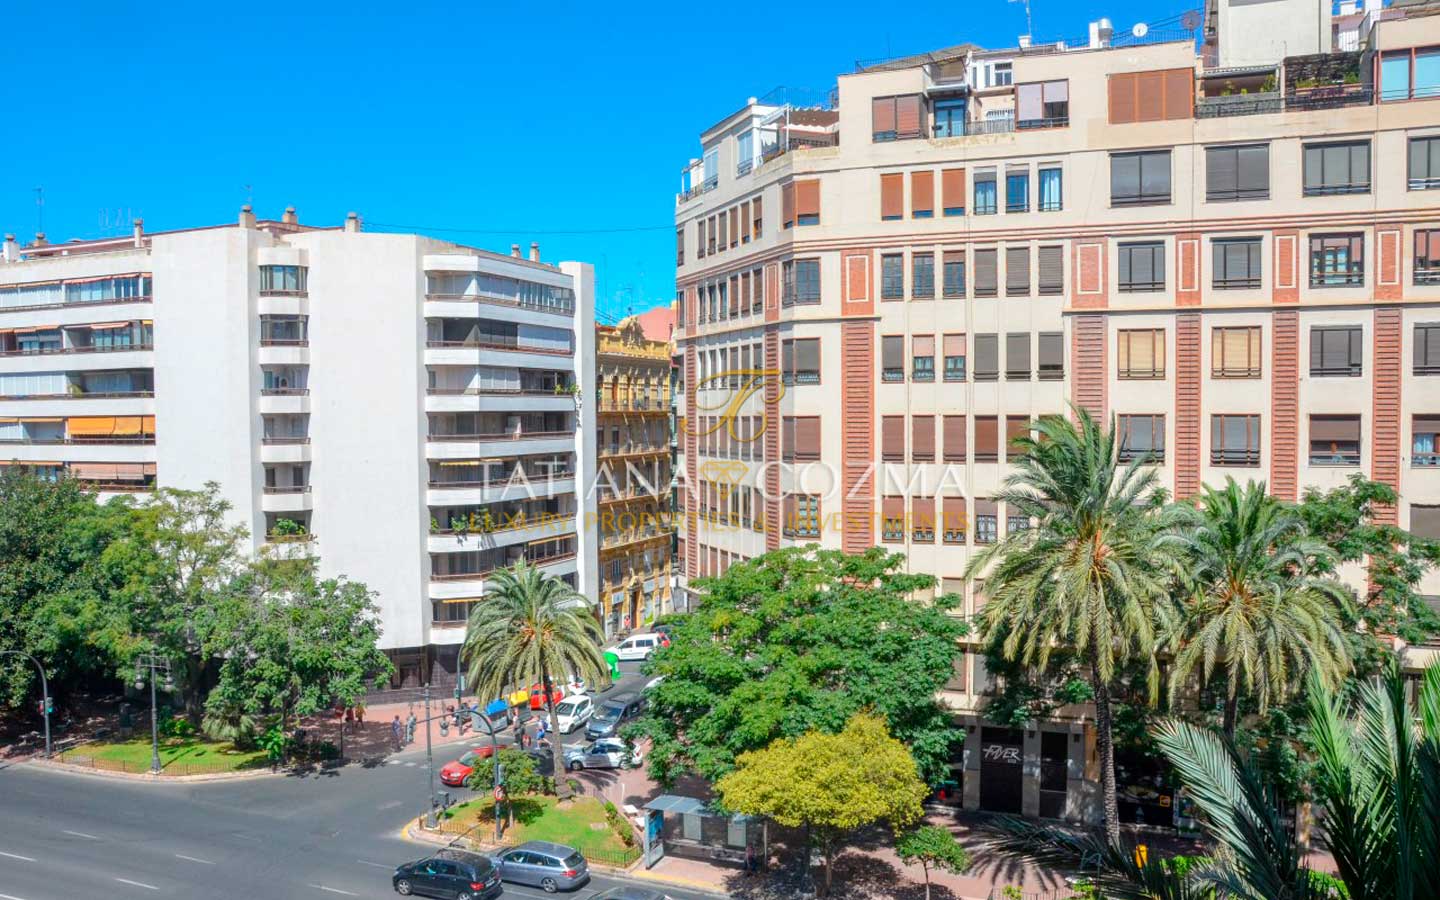 Excepcional vivienda en el corazón de Valencia